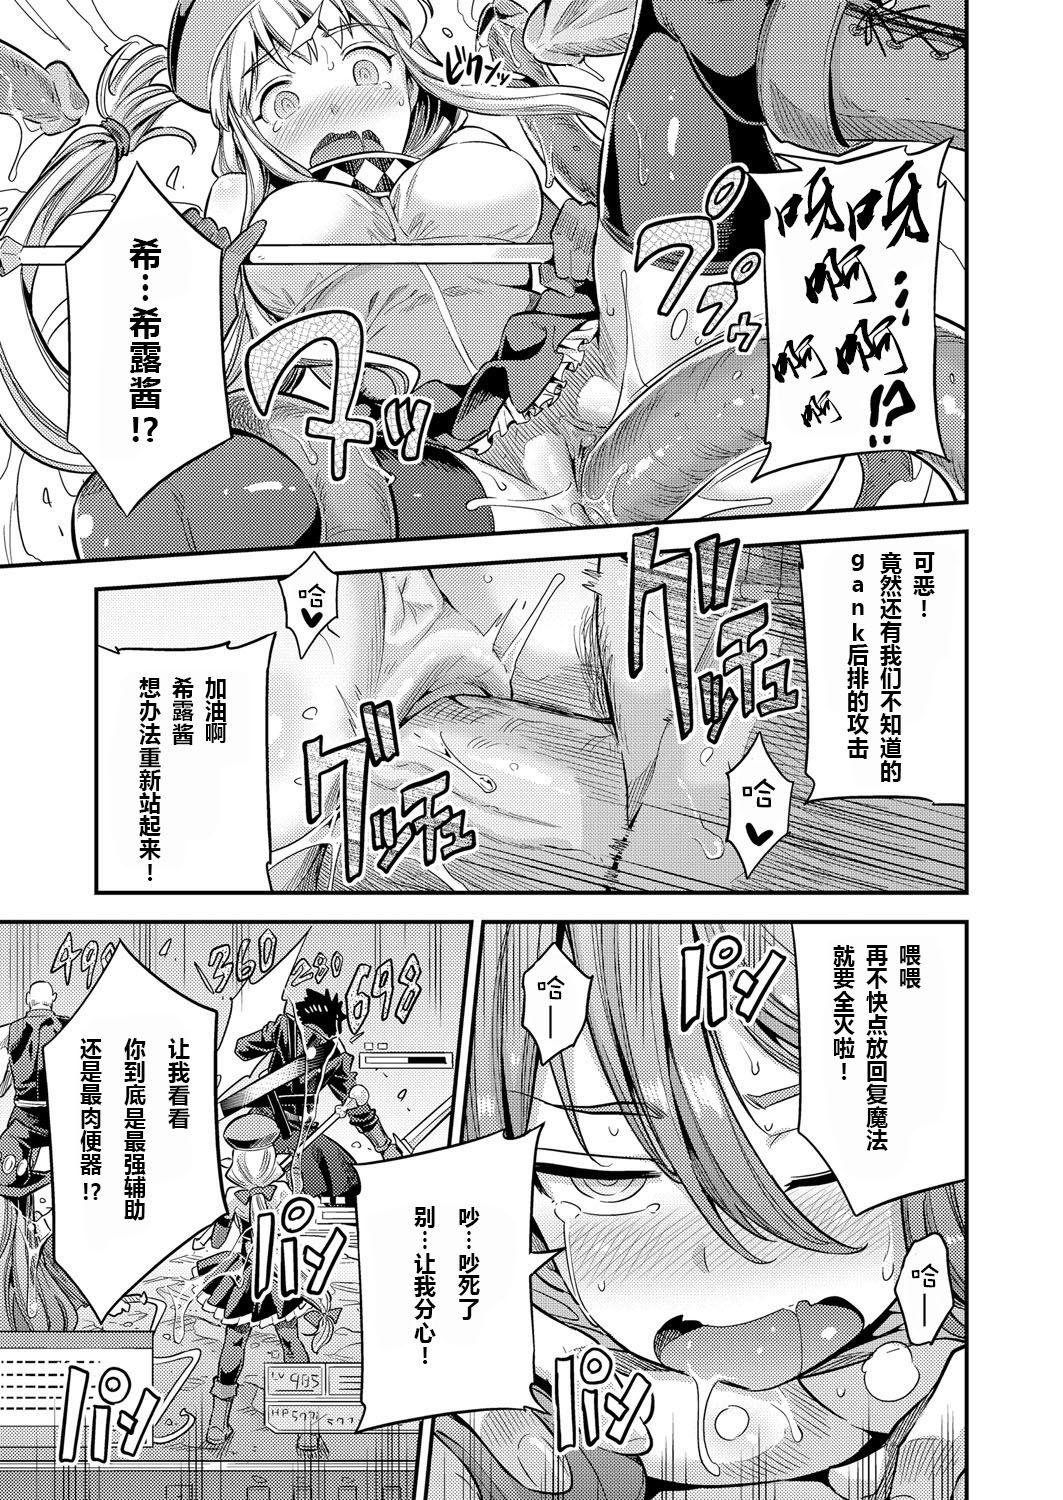 Jockstrap Watashi ga Ittara Mina Shinjau Netoge Haijin wa Tanetsuke Rape saretemo Te ga Hanasenain desu Fuck Pussy - Page 11